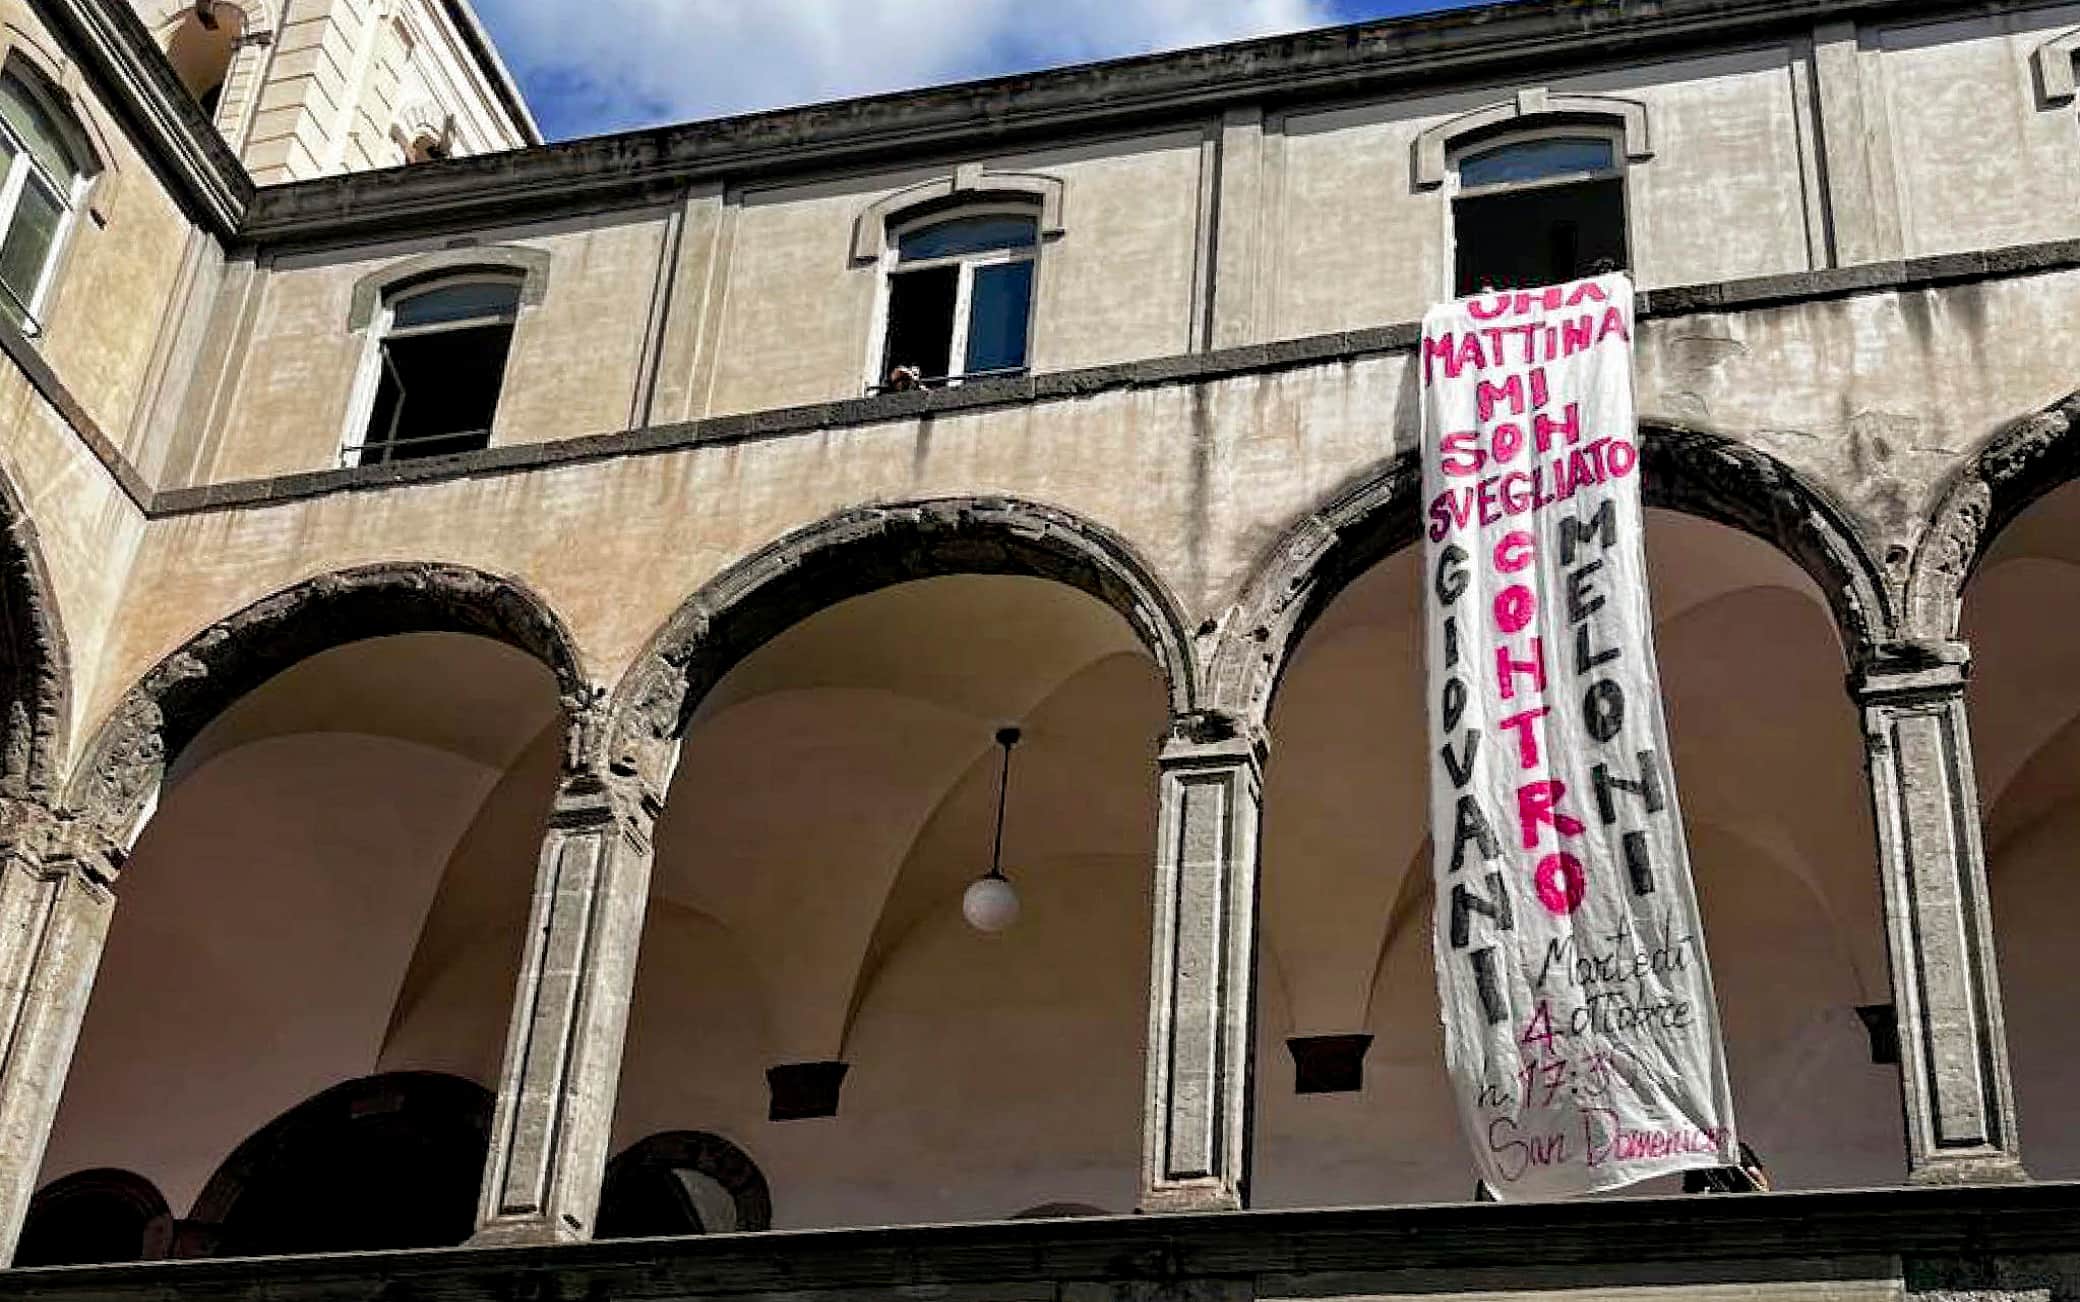 Uno degli striscioni contro la leader di Fratelli d'Italia, Giorgia Meloni, esposti sulle facciate di alcuni atenei a Napoli, 3 ottobre 2022.
ANSA/ CIRO FUSCO